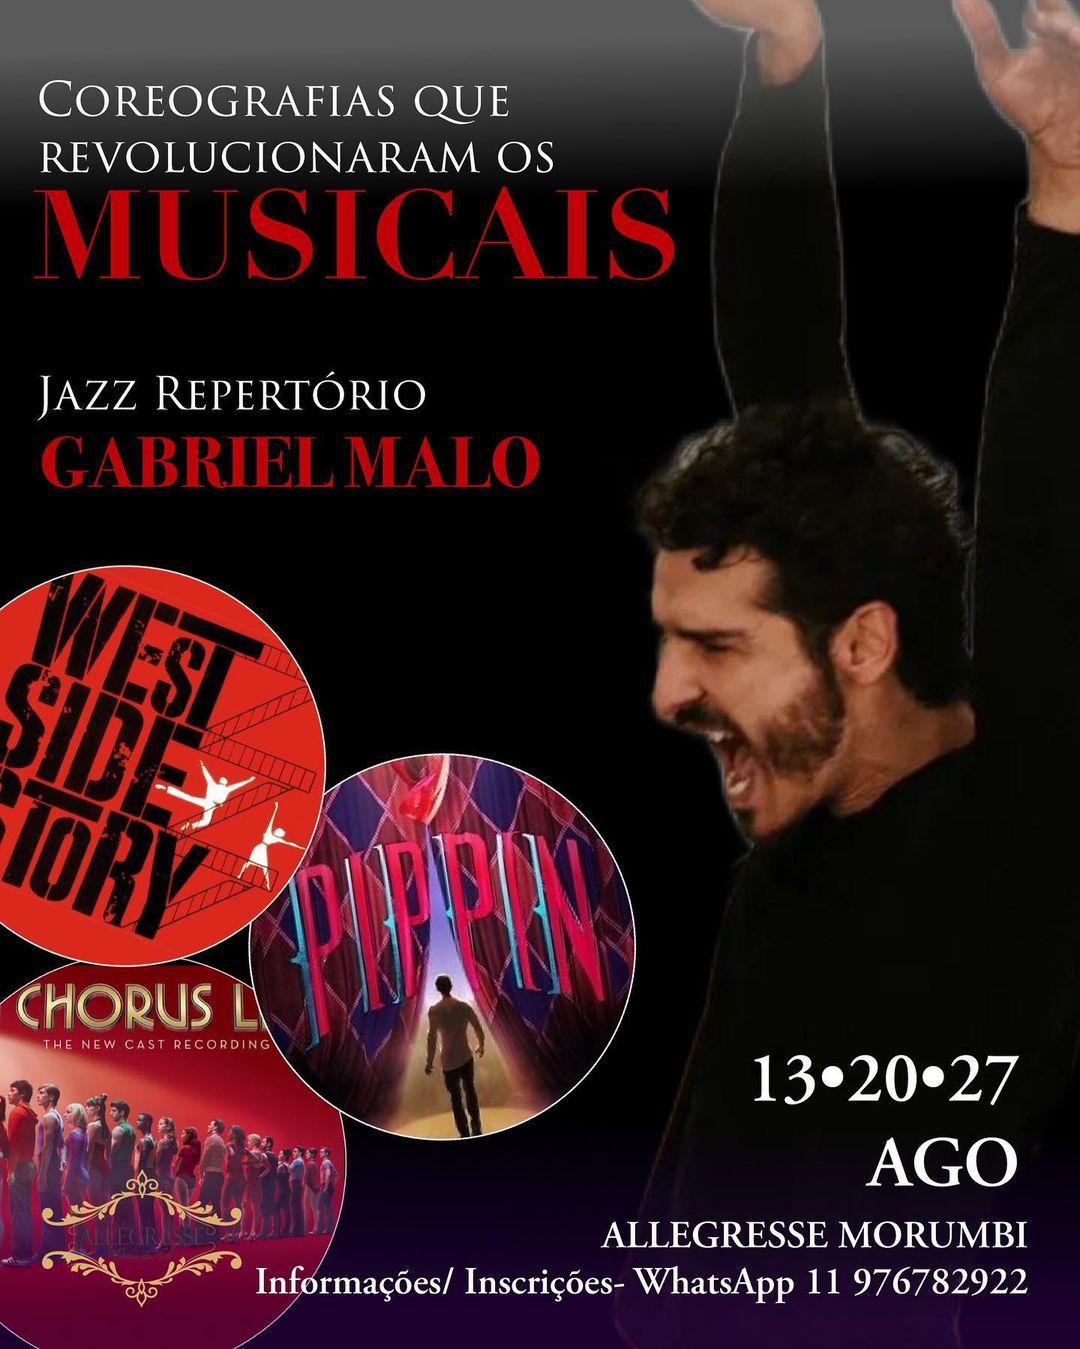 Workshop “Coreografias que Revolucionaram os Musicais” com Gabriel Malo em São Paulo